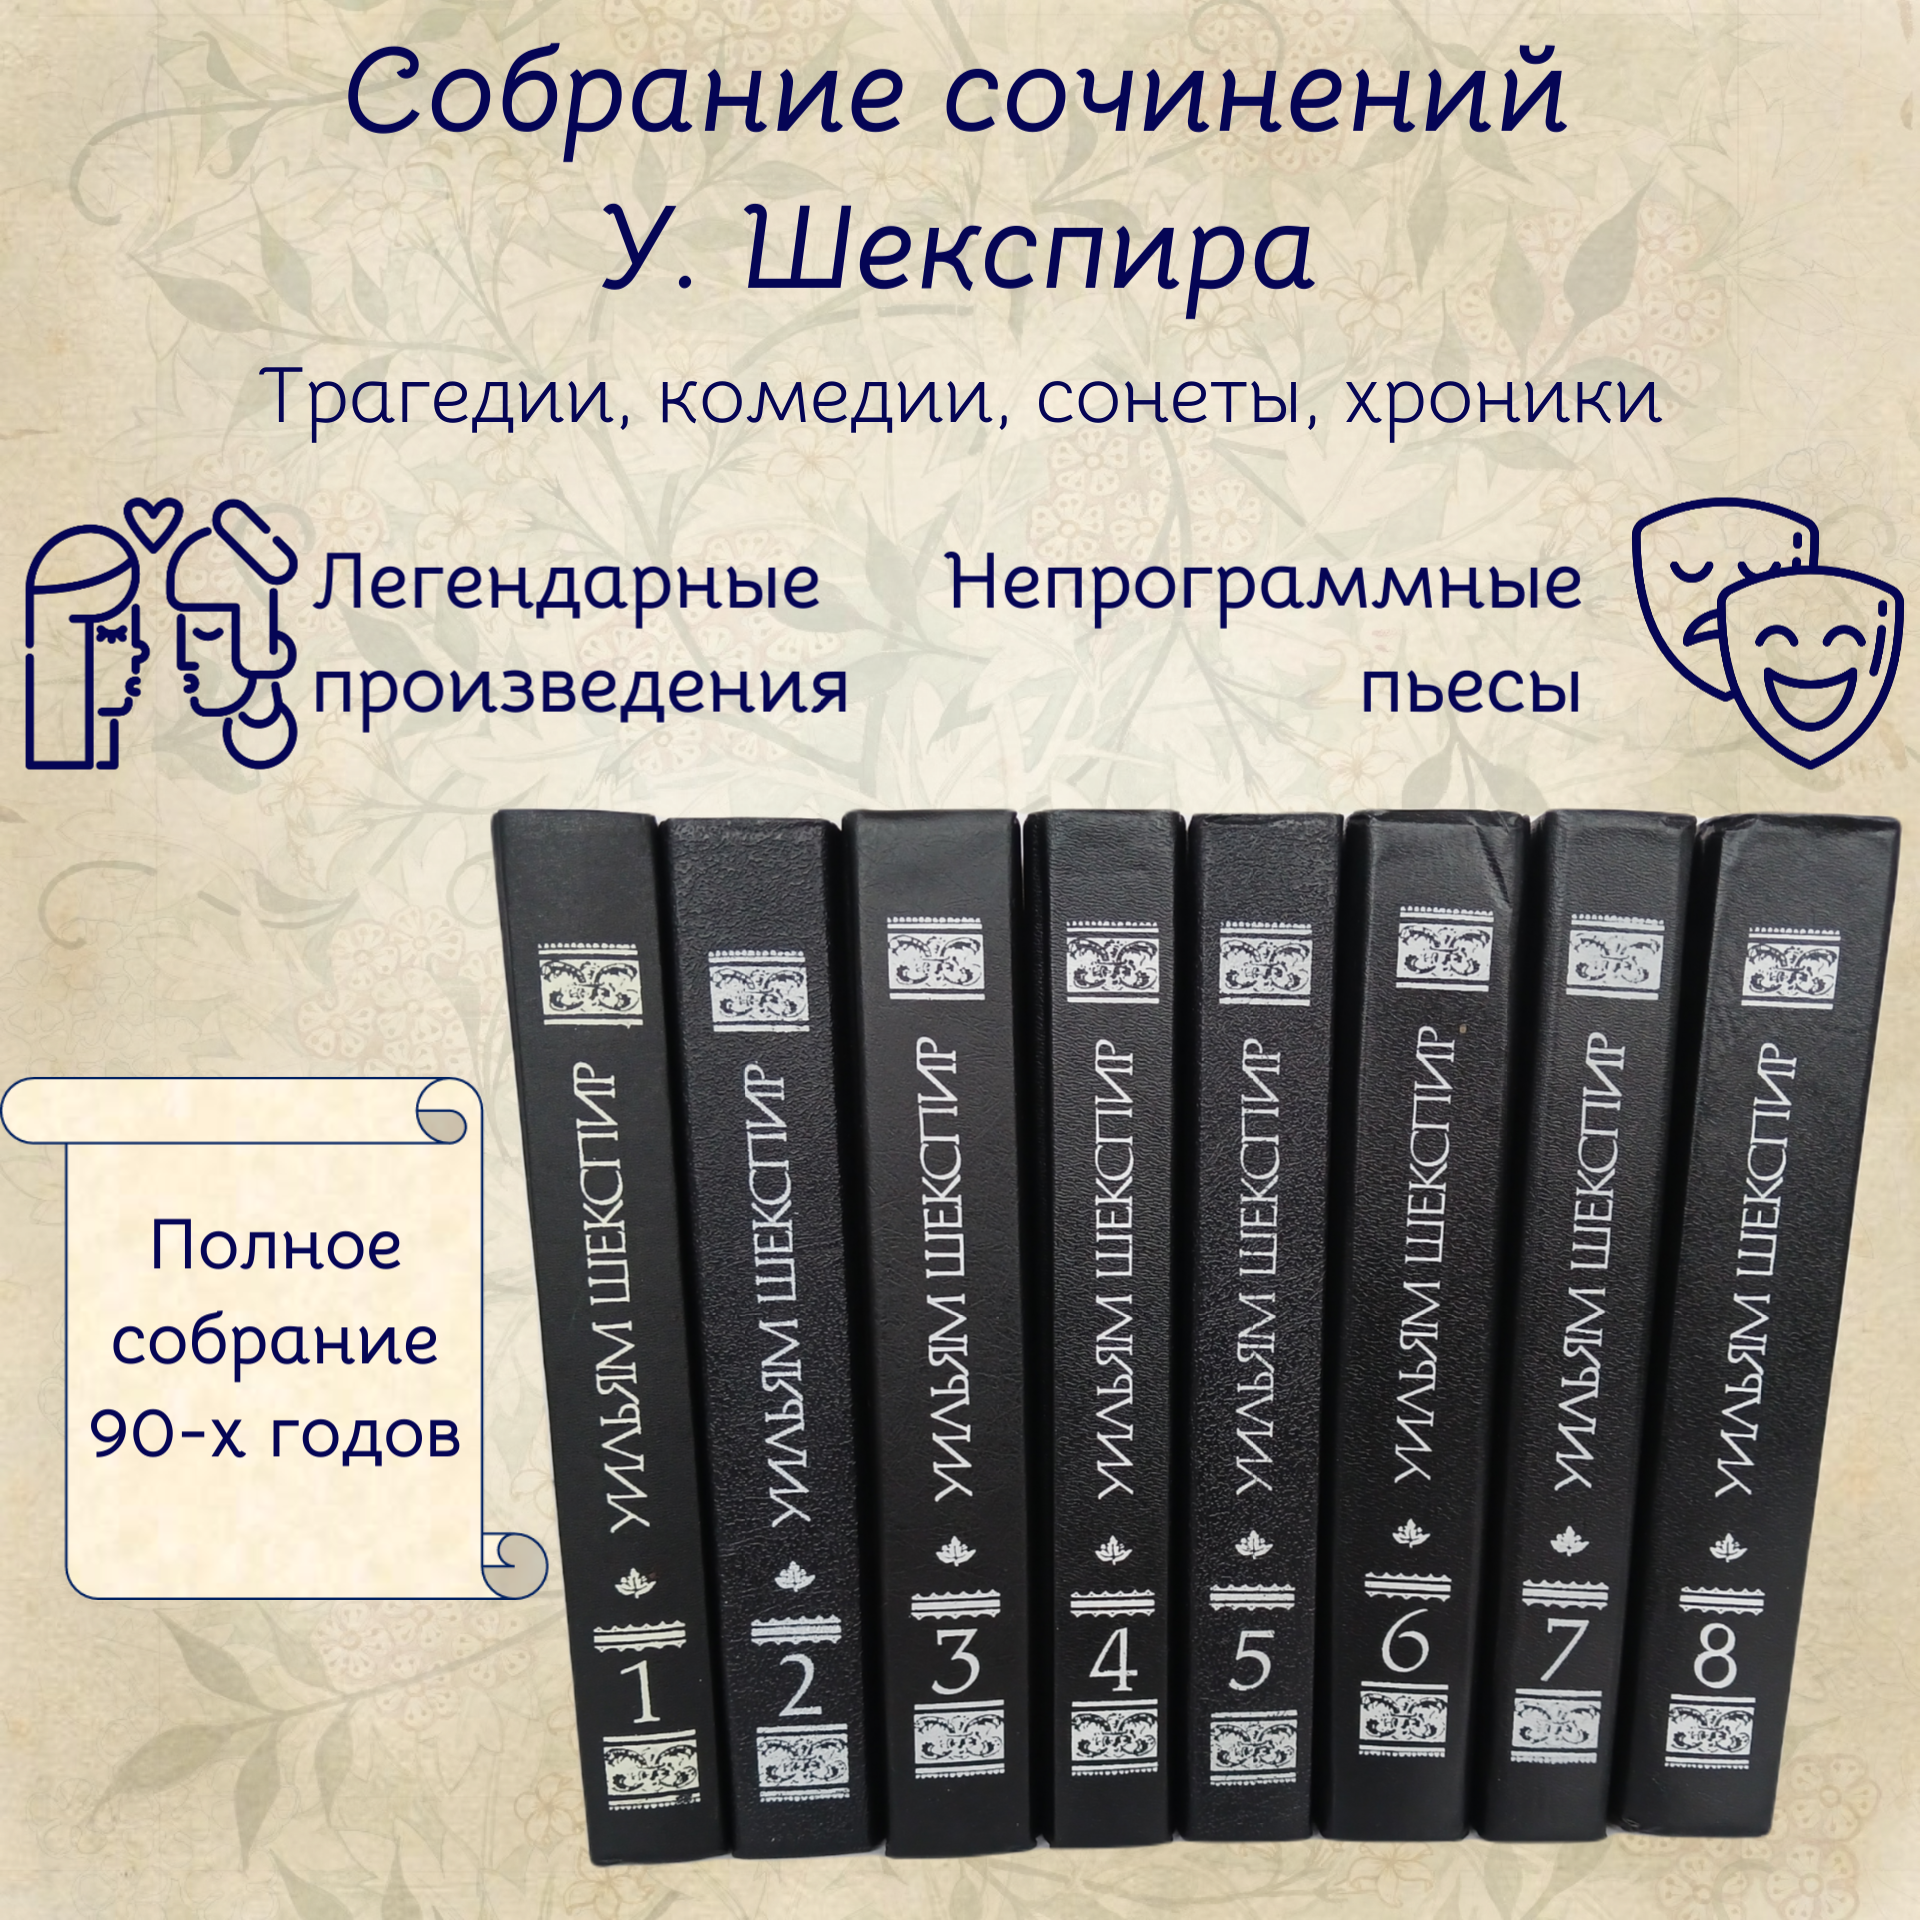 Уильям Шекспир. Собрание сочинений в 8 томах (комплект)